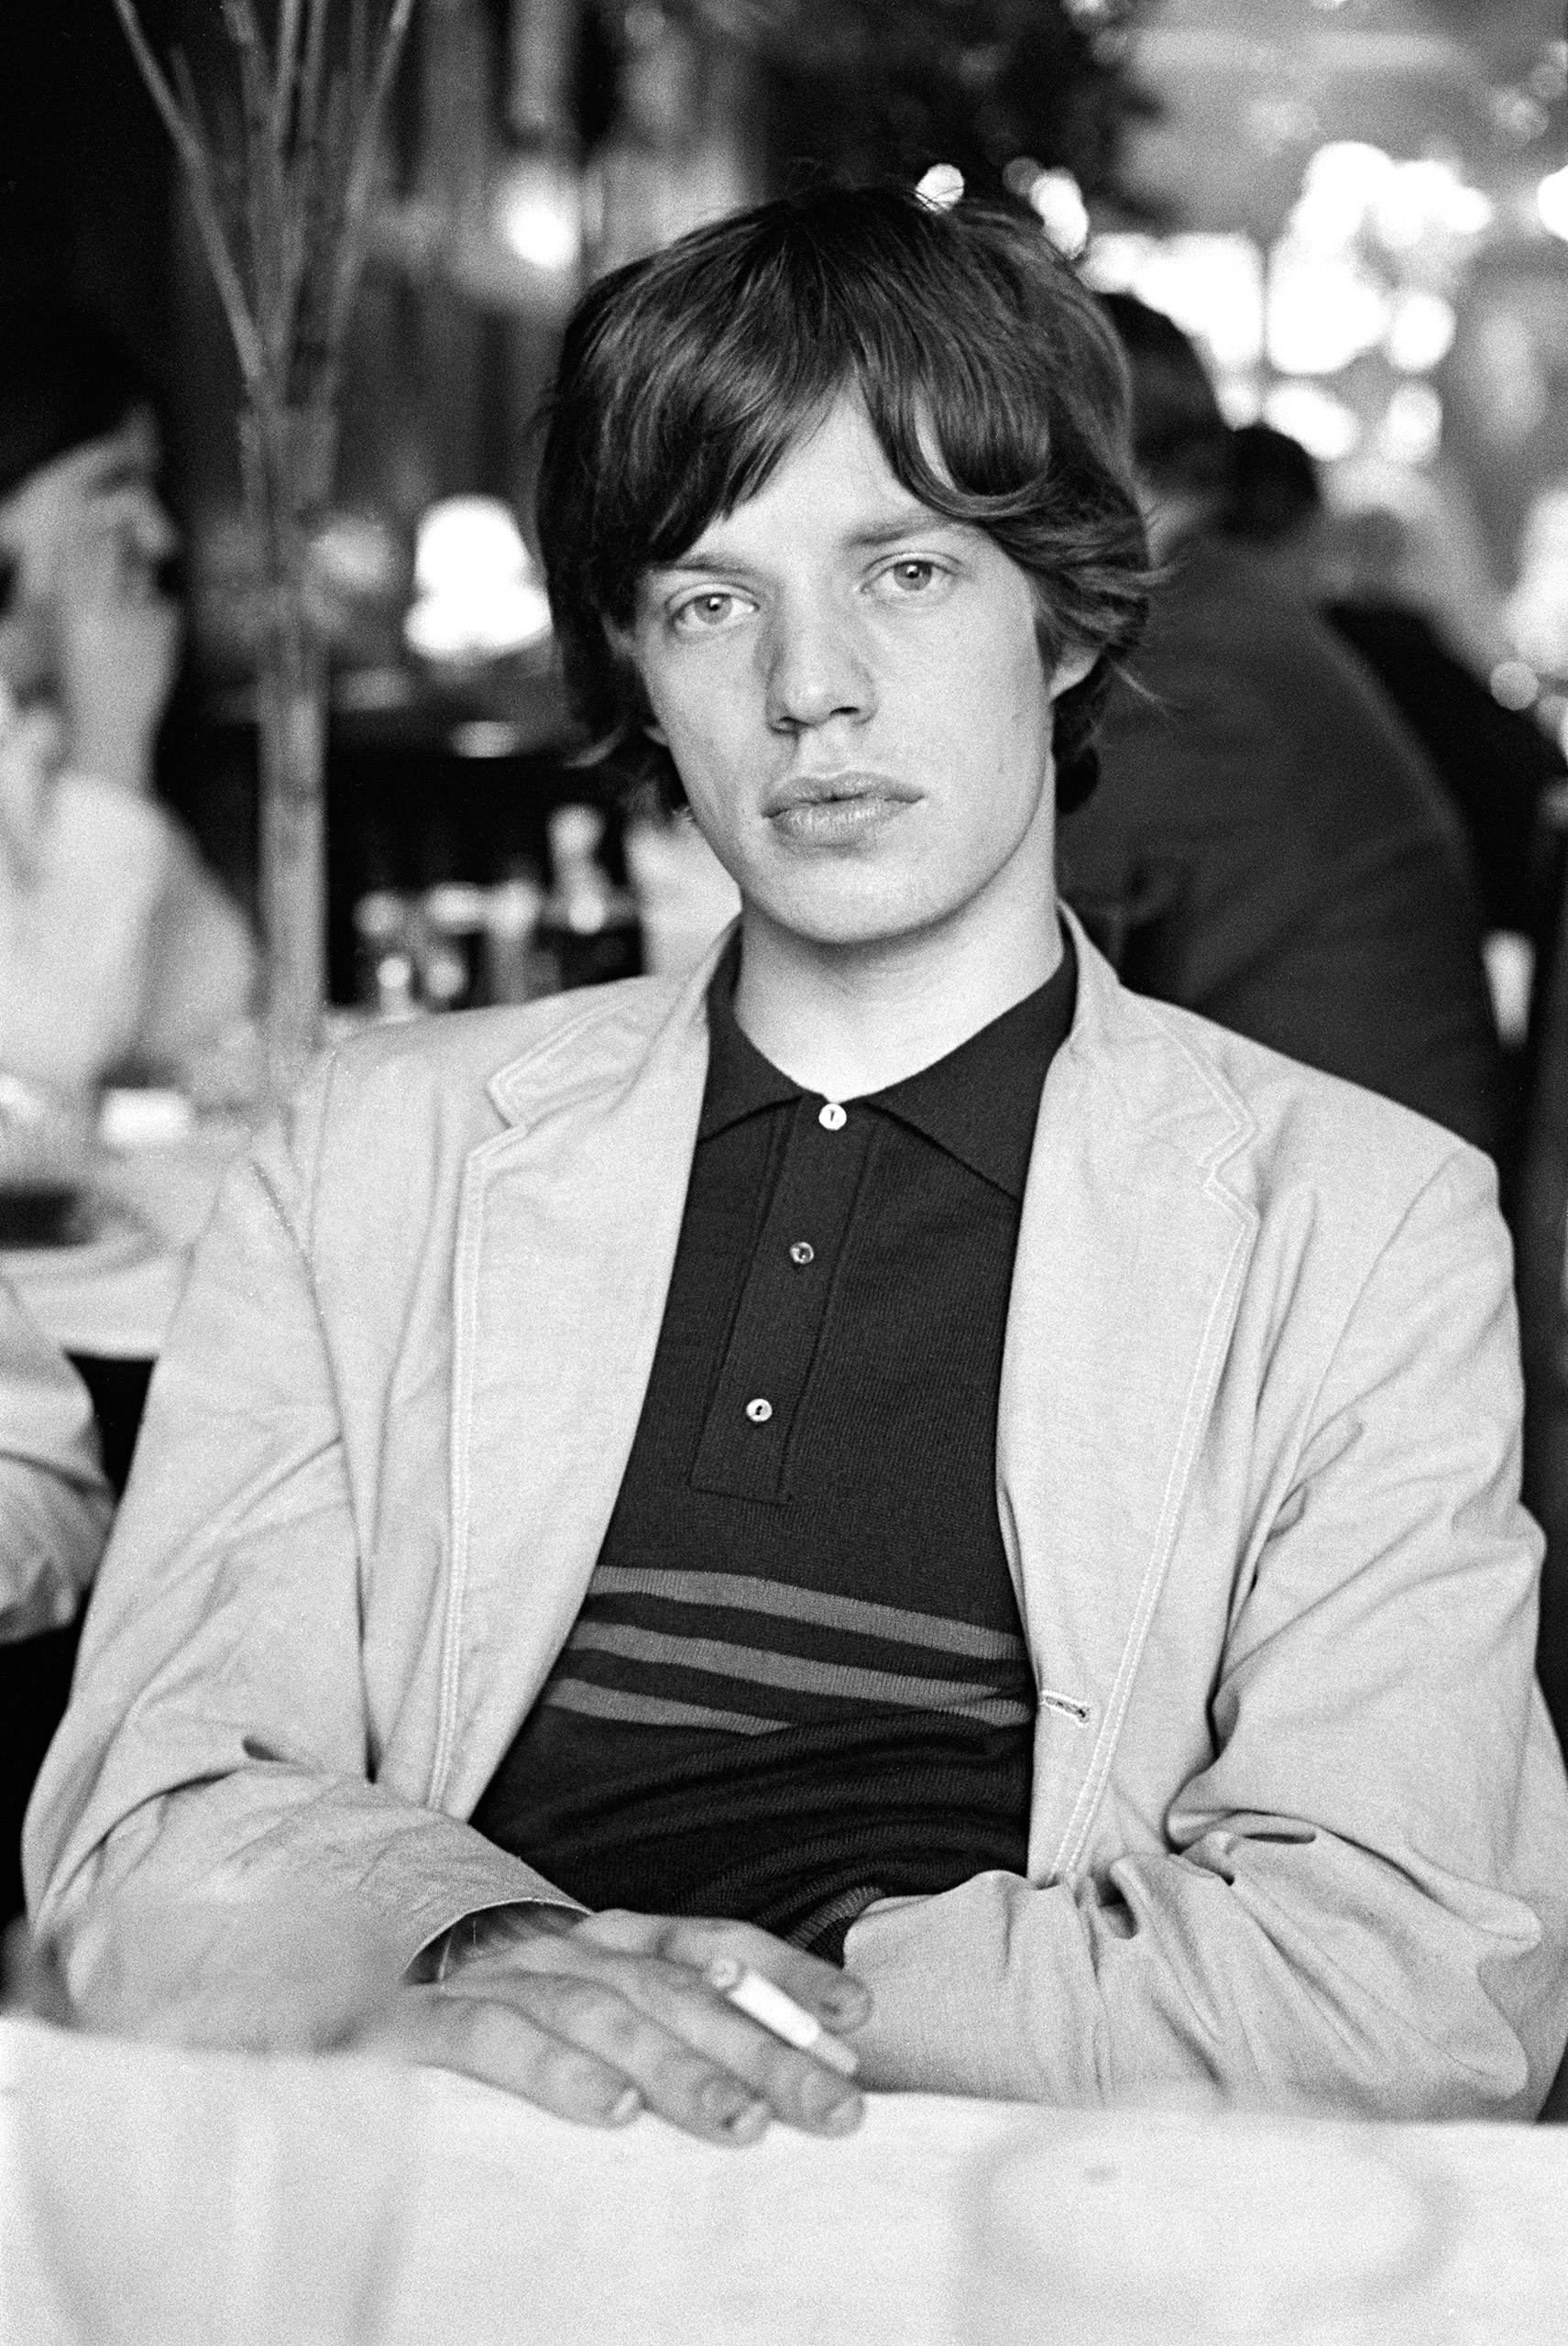 Rolling Stones singer Mick Jagger having a cigarette backstage; 1964.